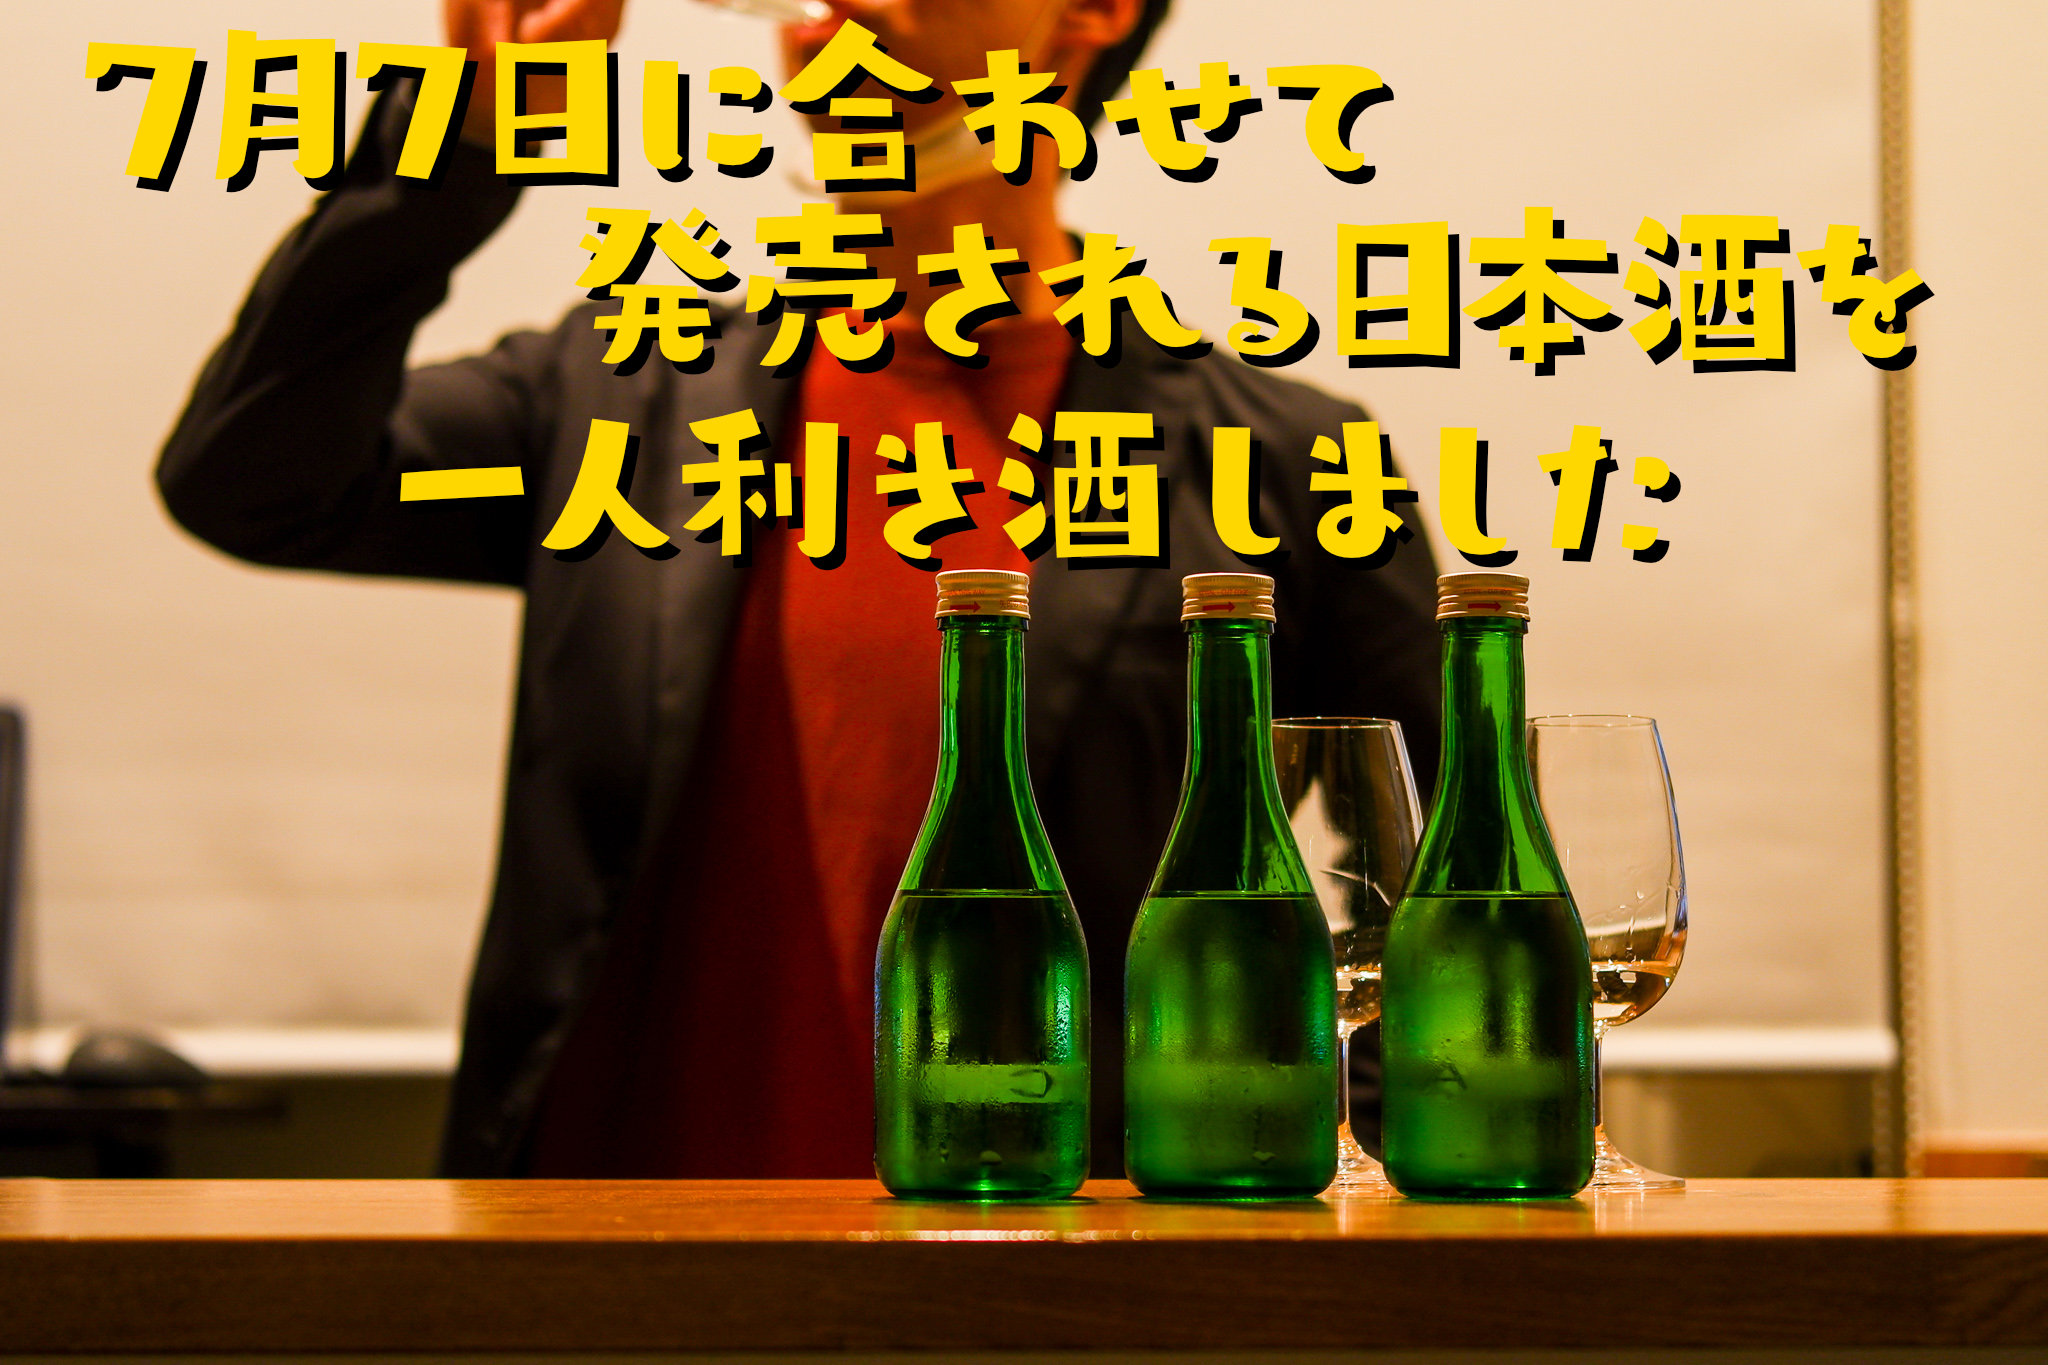 蔵元に行けないので自宅で一人利き酒 初呑切り 選びました くわな屋 埼玉県北本市のワイン日本酒中心のお店